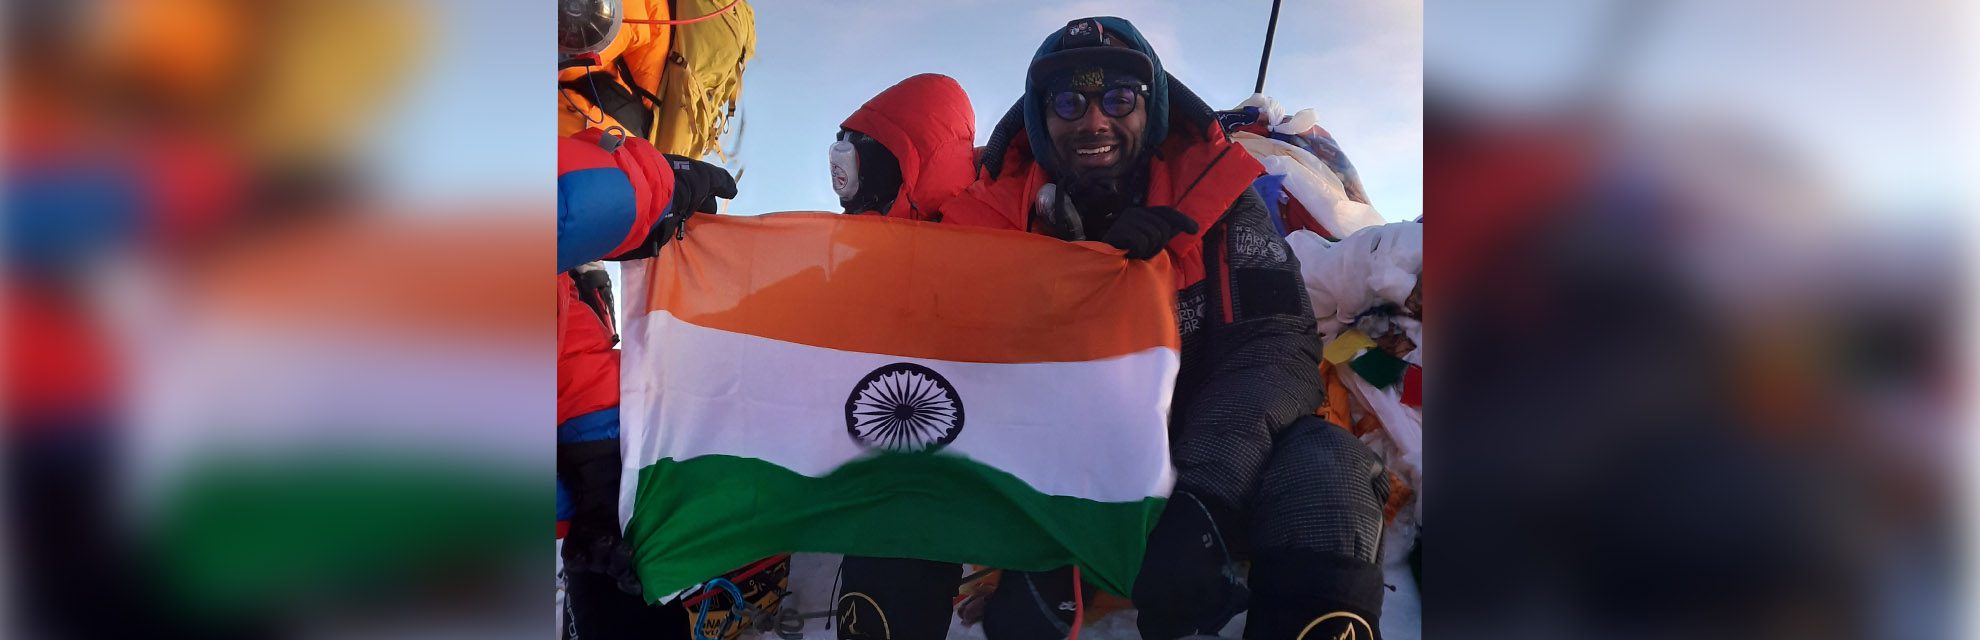 De in India geboren bergbeklimmer Satish Gogineni vestigt nieuw record door binnen 20 uur de Mount Everest en Mt Lhotse te beklimmen